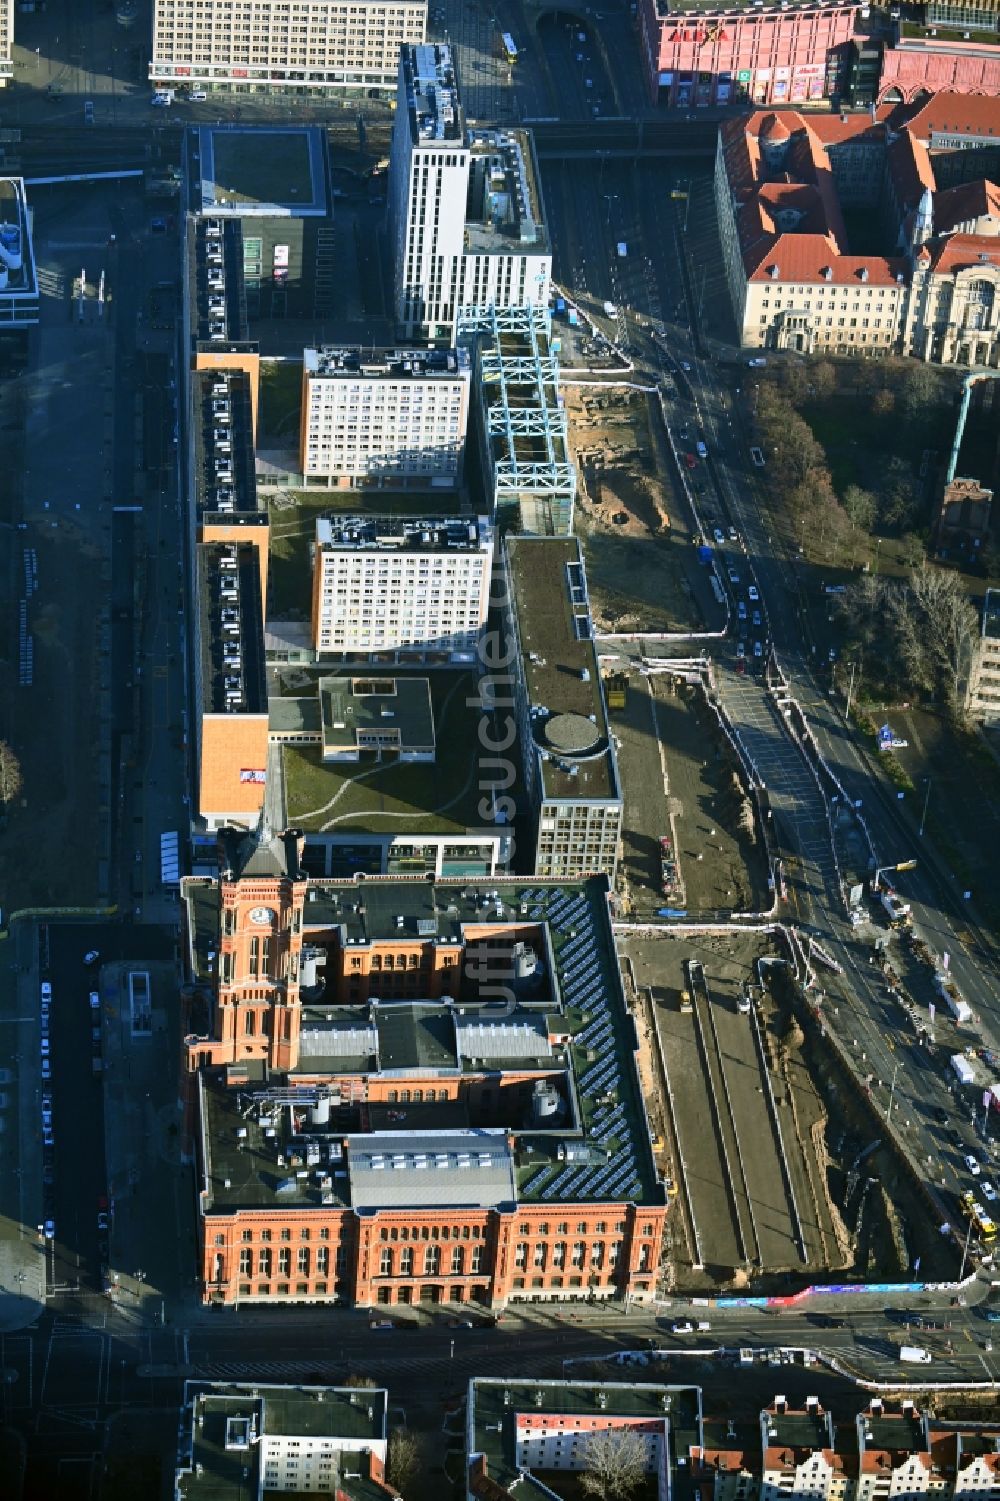 Berlin von oben - Baustelle mit Erschließungs - und Aufschüttungs- Arbeiten am Molkenmarkt entlang der Grunerstraße im Ortsteil Mitte in Berlin, Deutschland